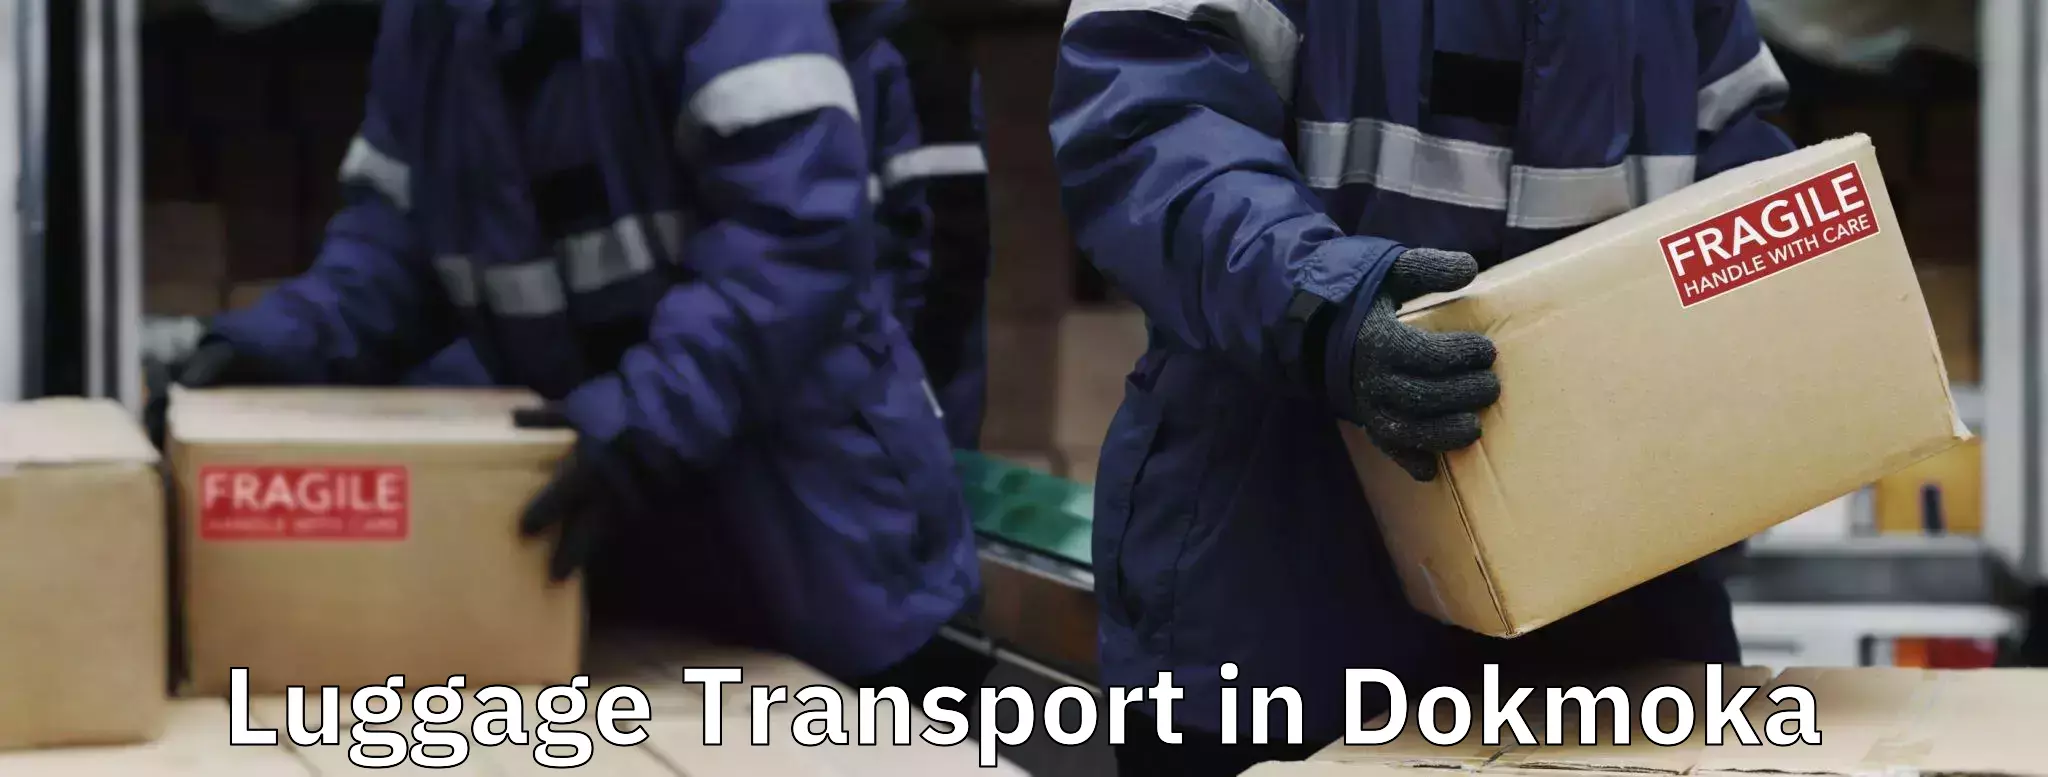 Automated luggage transport in Dokmoka